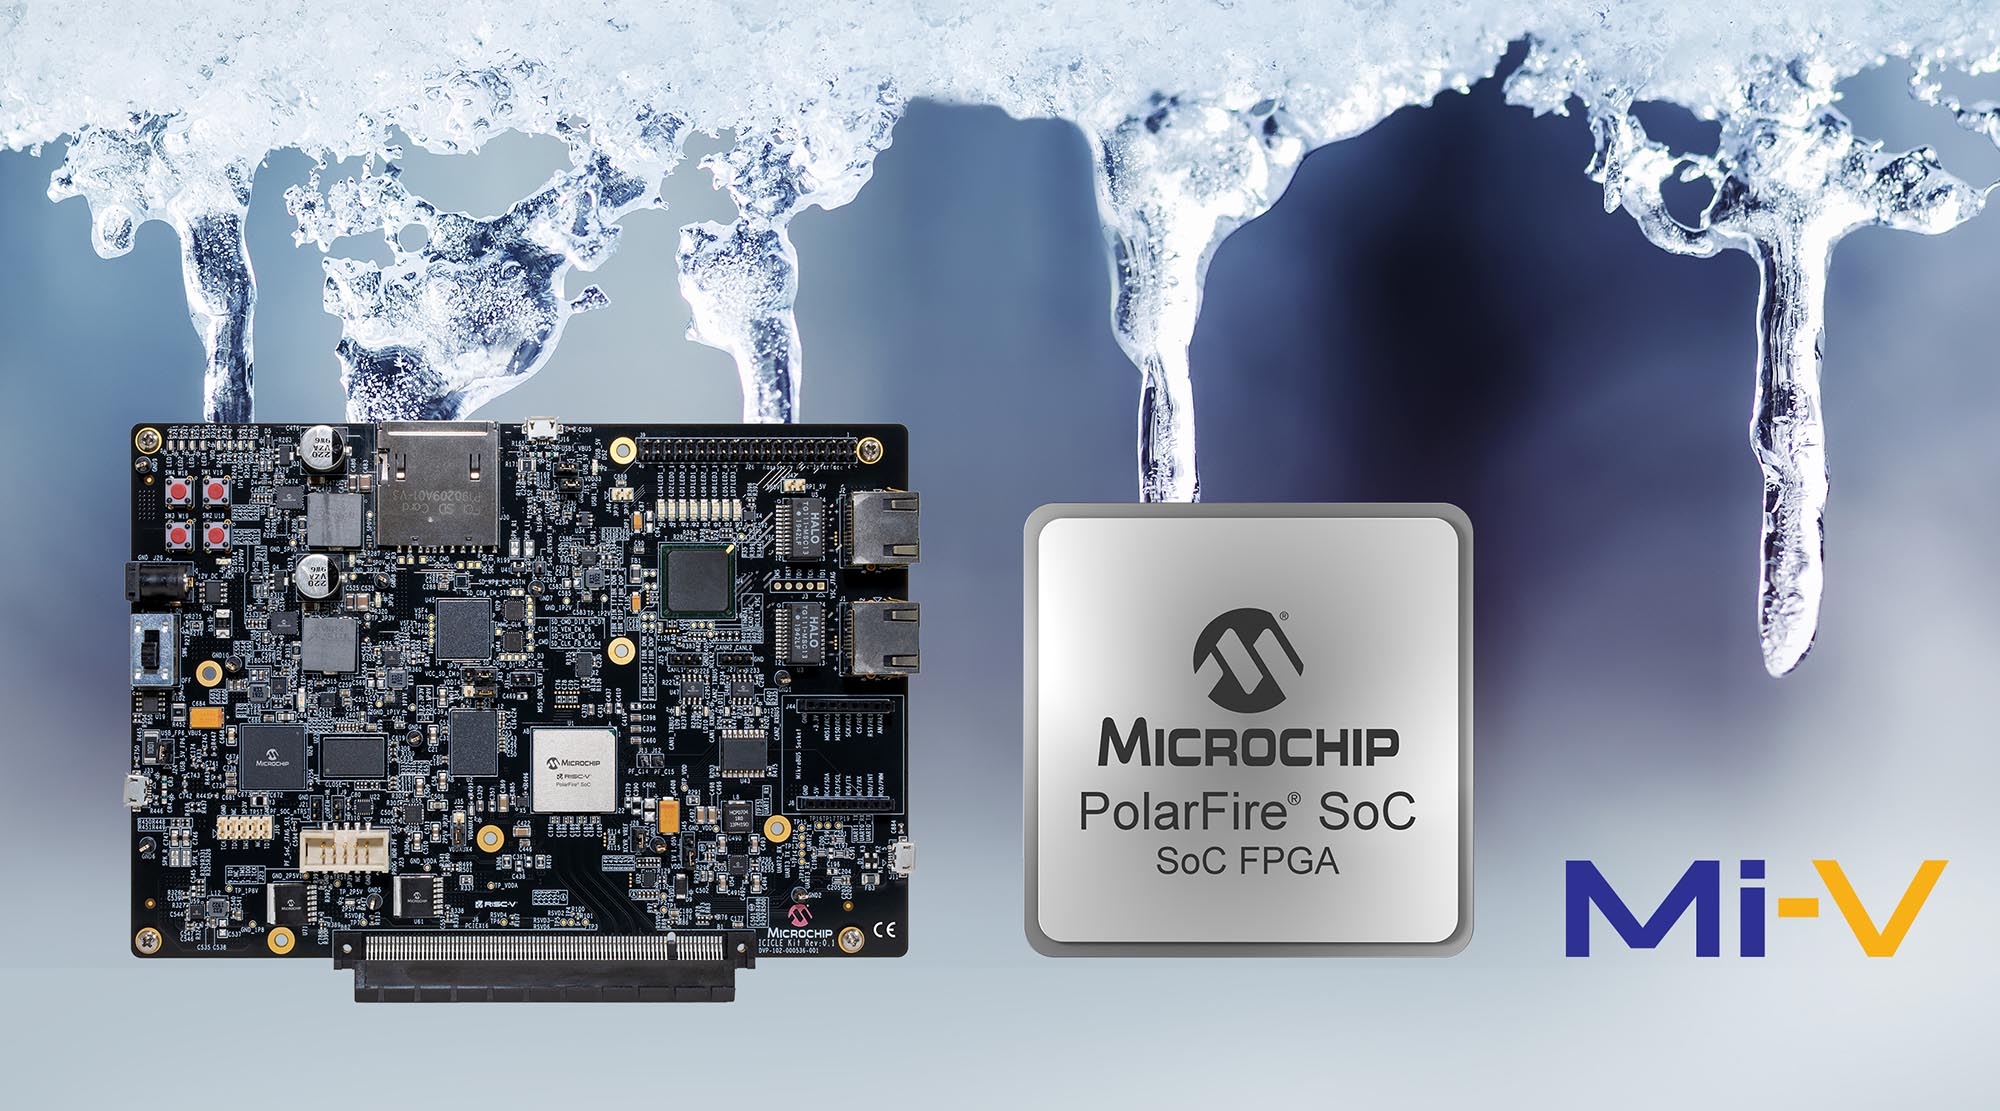 Bộ Kit phát triển FPGA SoC đầu tiên trong ngành Dựa trên kiến trúc tập lệnh RISC-V hiện đã sẵn sàng